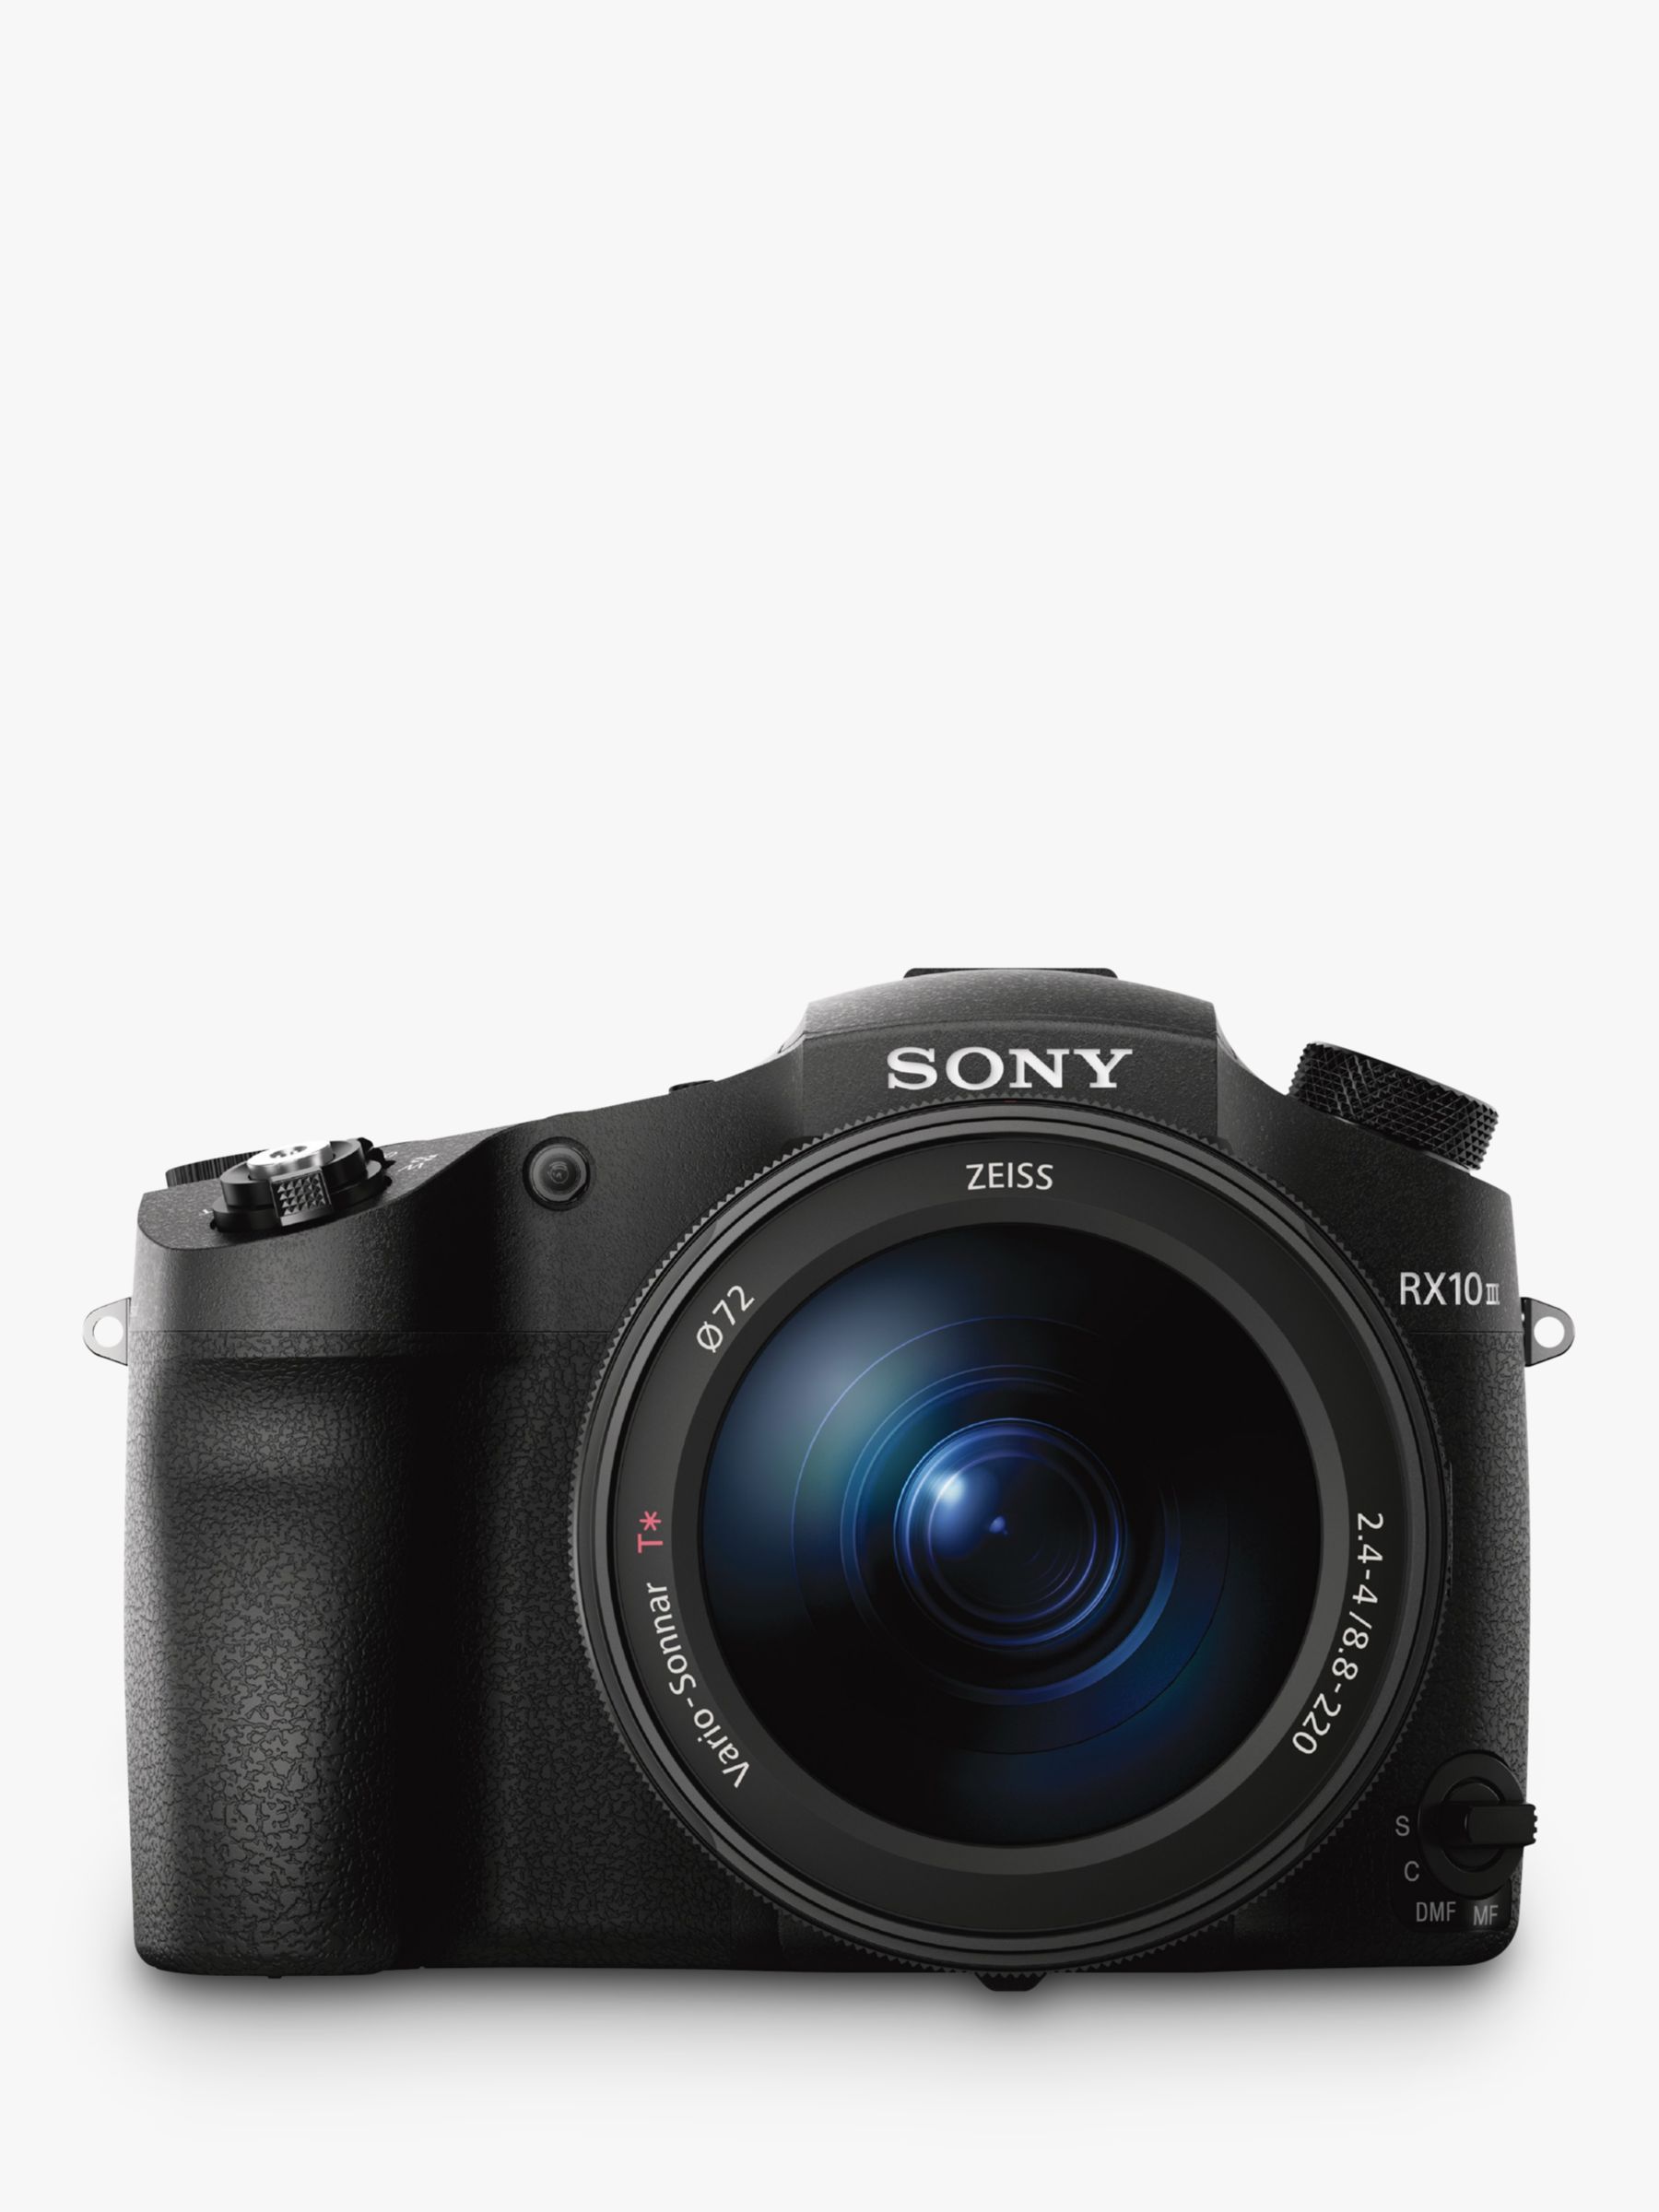 Sony Cyber-Shot DSC-RX10 III Bridge Camera, 4K Ultra HD, 20.1MP, 25x Optical Zoom, Wi-Fi, NFC, EVF, 3 LCD Vari-Angle Screen